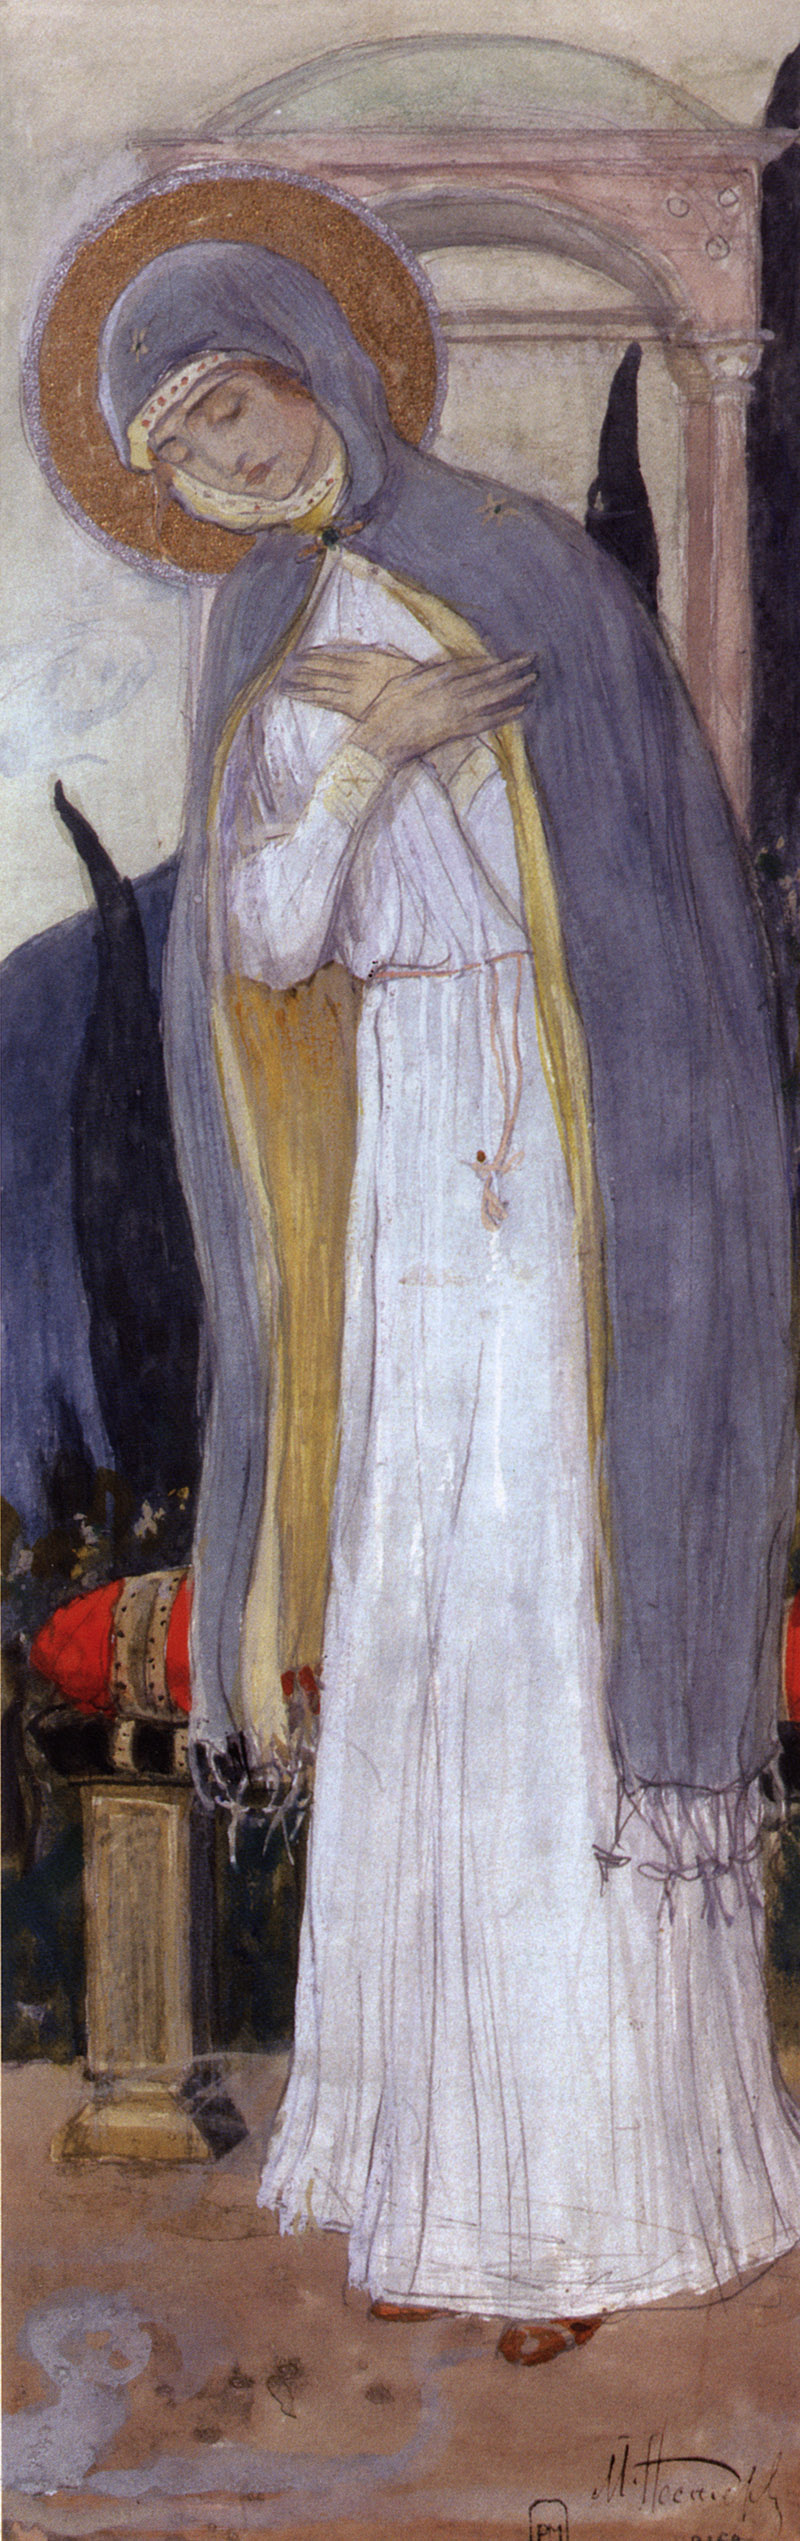 Нестеров М.. Дева Мария. 1899-1900